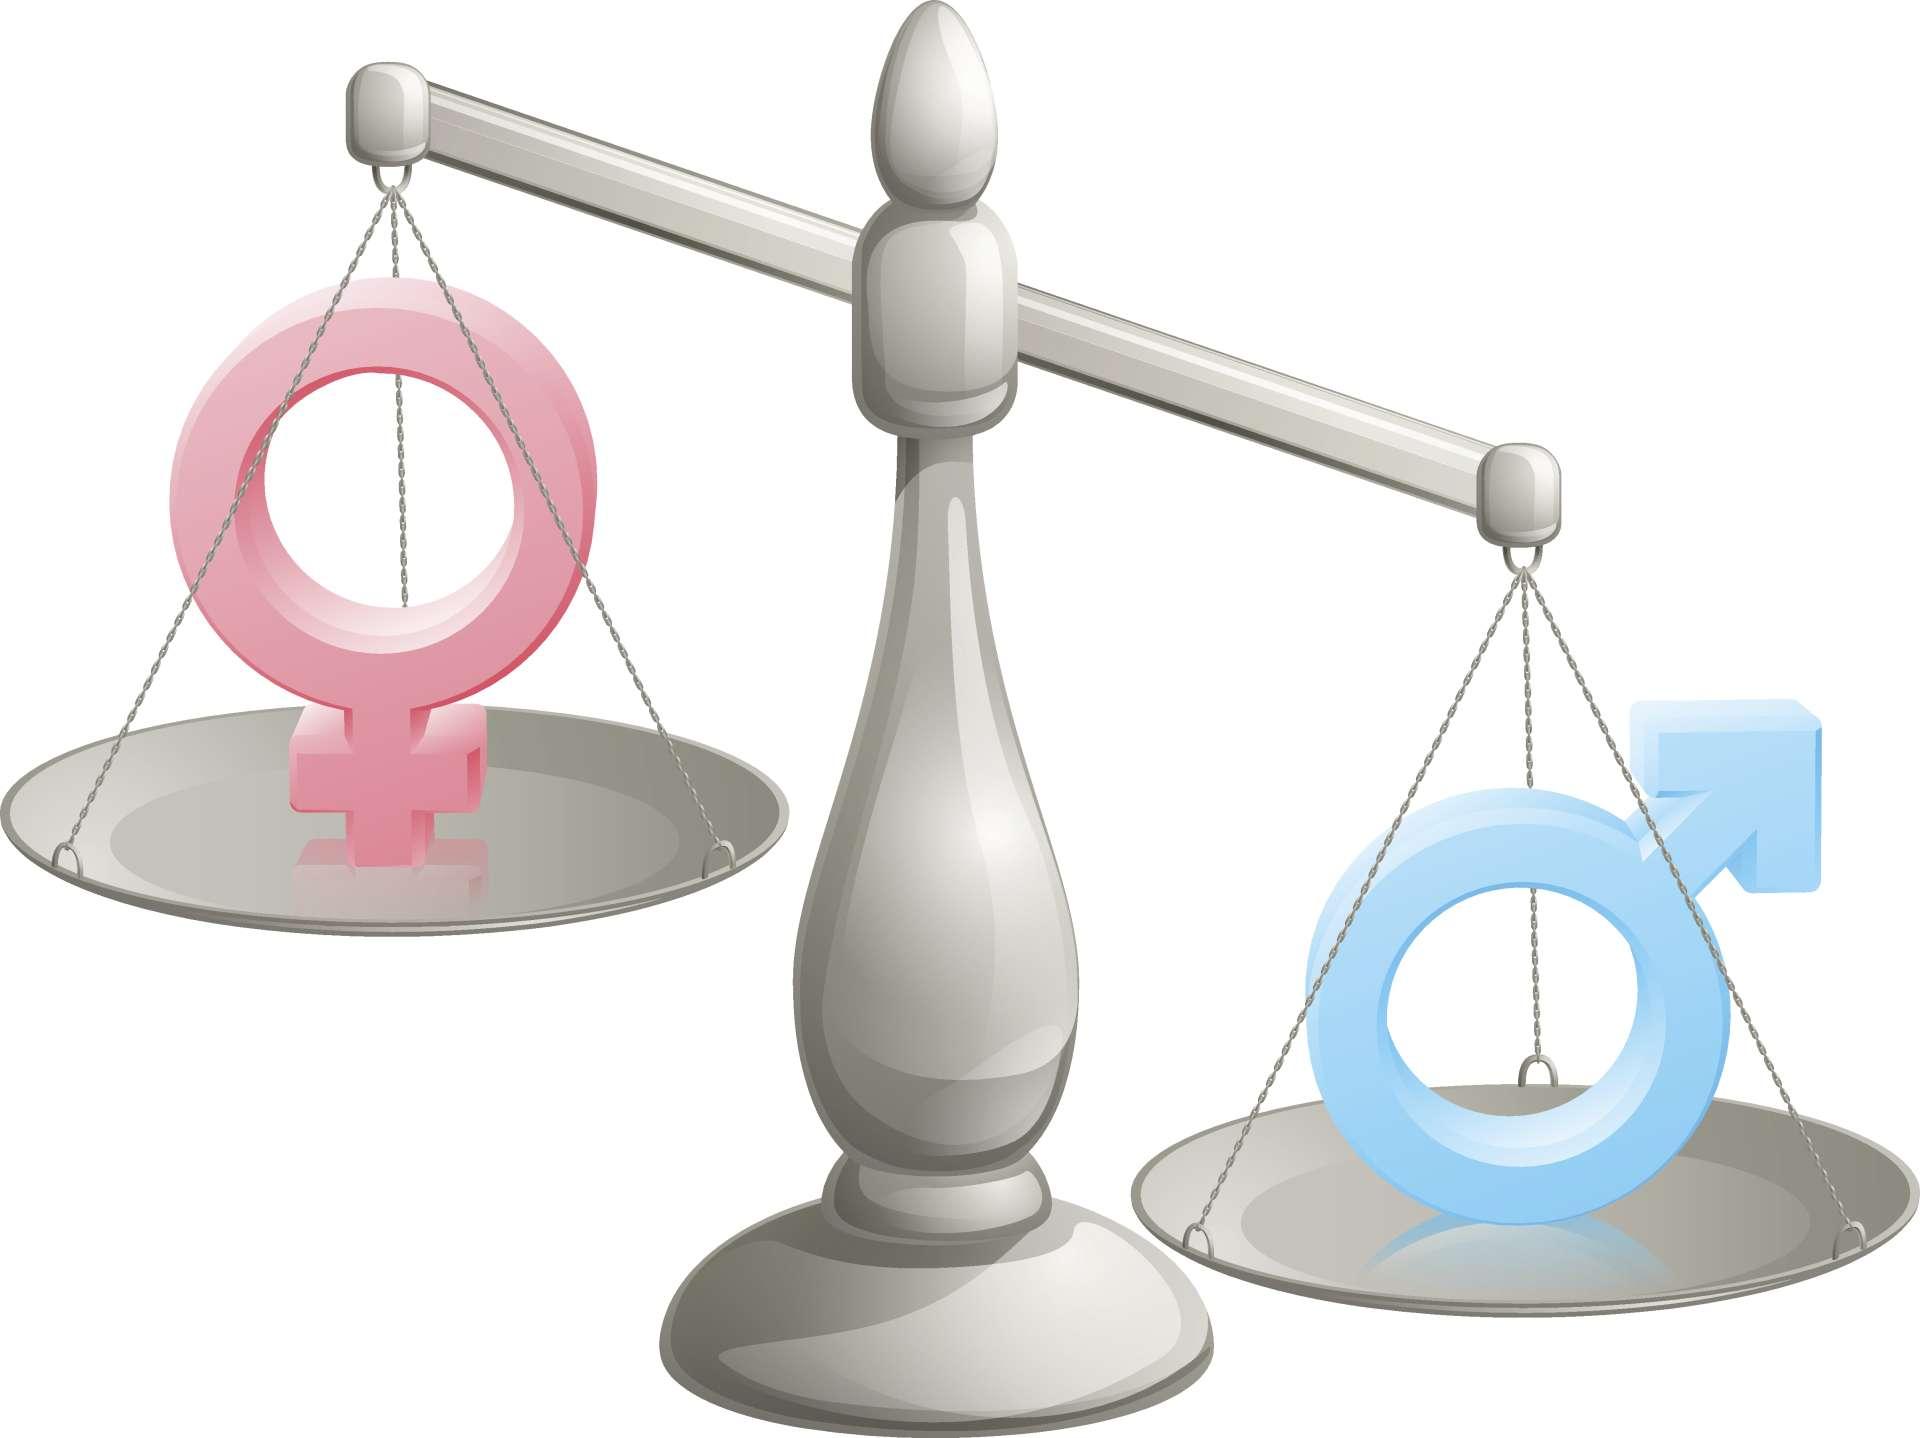 Mann Frau skaliert Konzept mit männlichen und weiblichen Symbolen, der Mann wiegt mehr